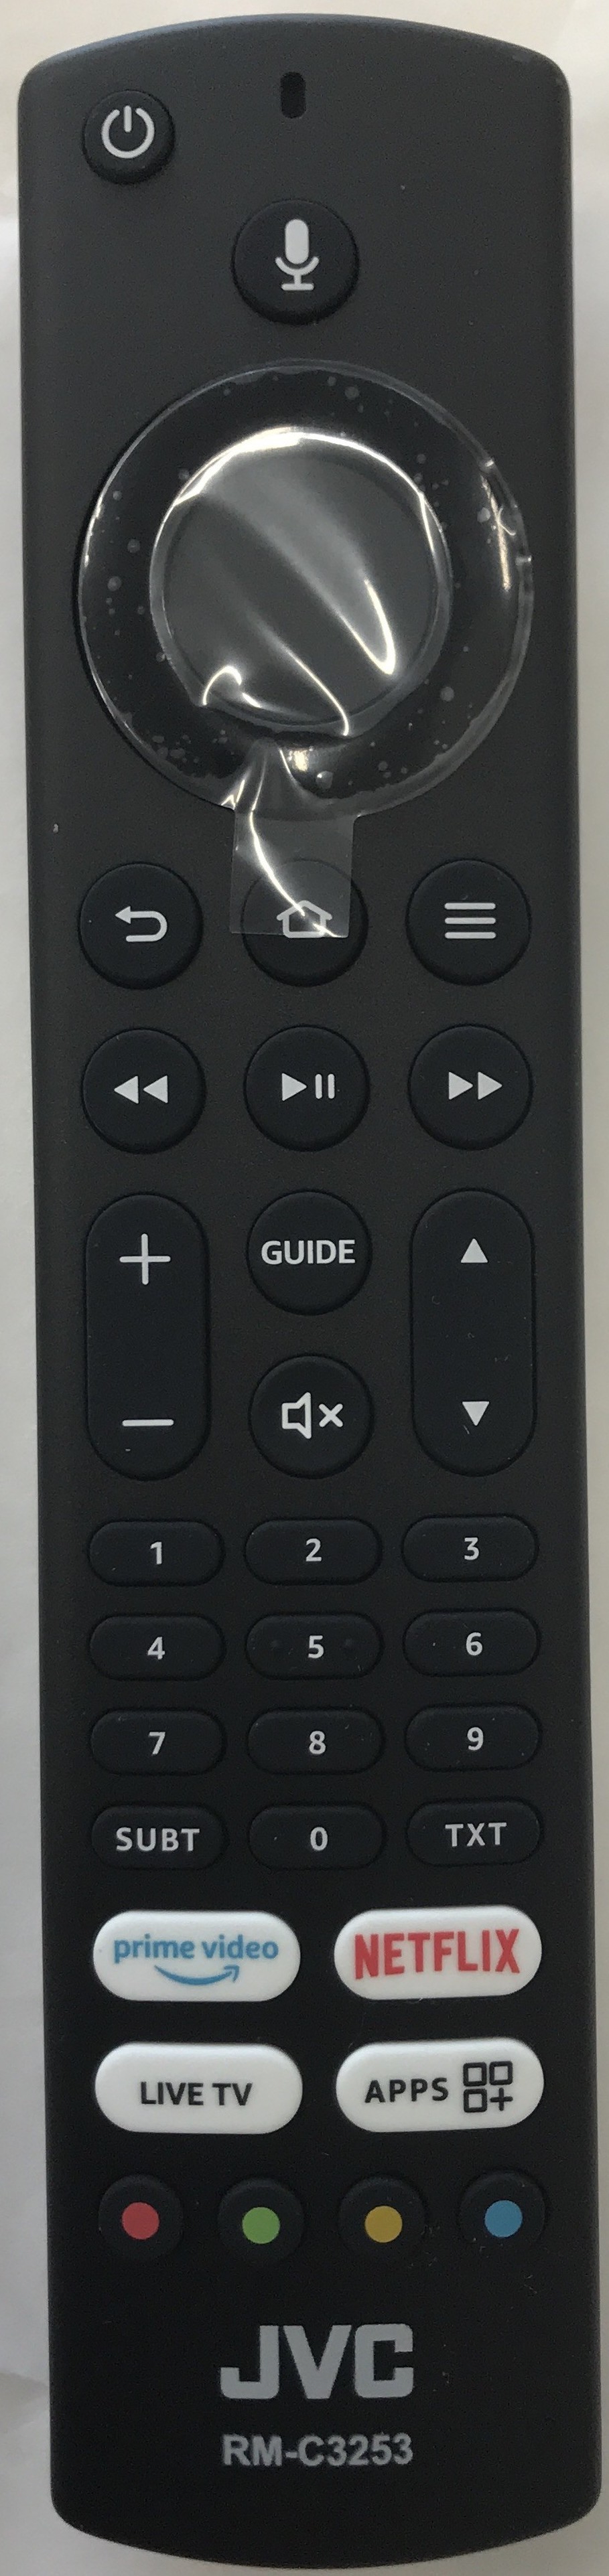 JVC LT-55CF890 Smart Remote Control Original 